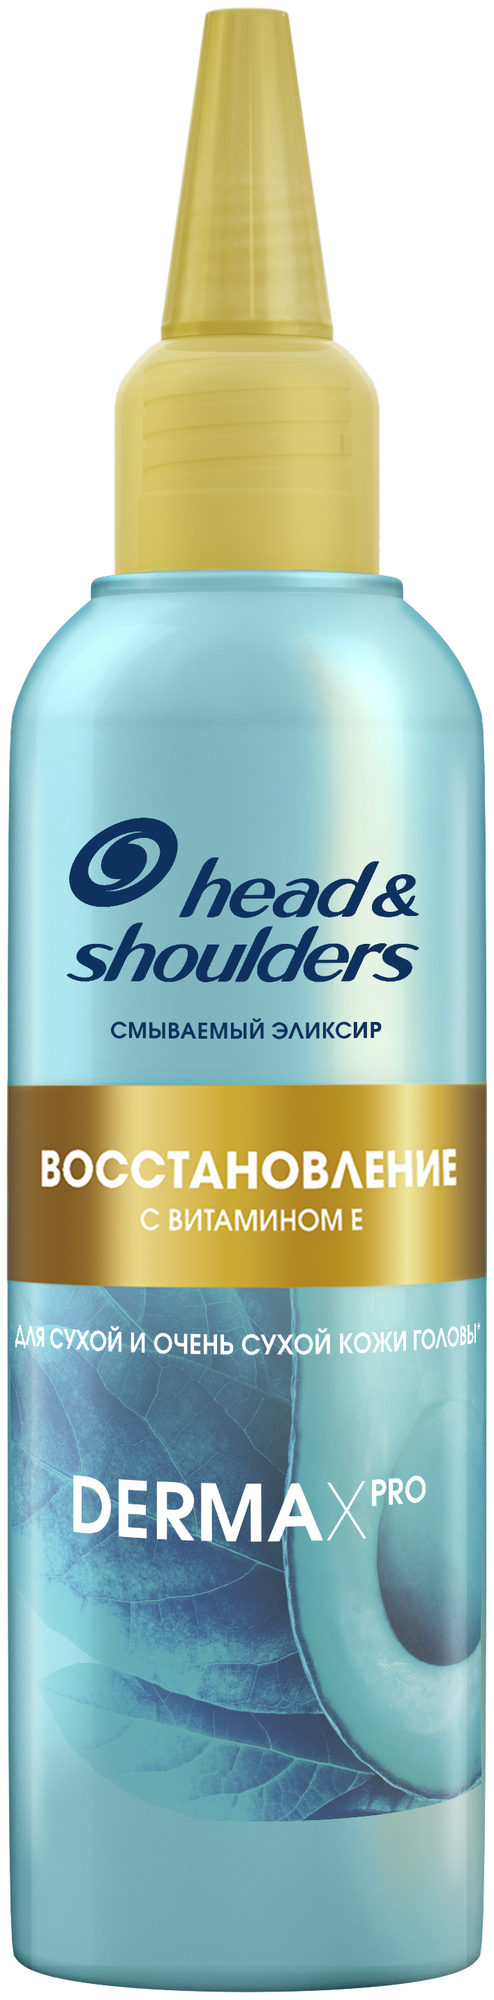 Head & Shoulders эликсир Derma X Pro Восстановление, 145 г, 145 мл, бутылка